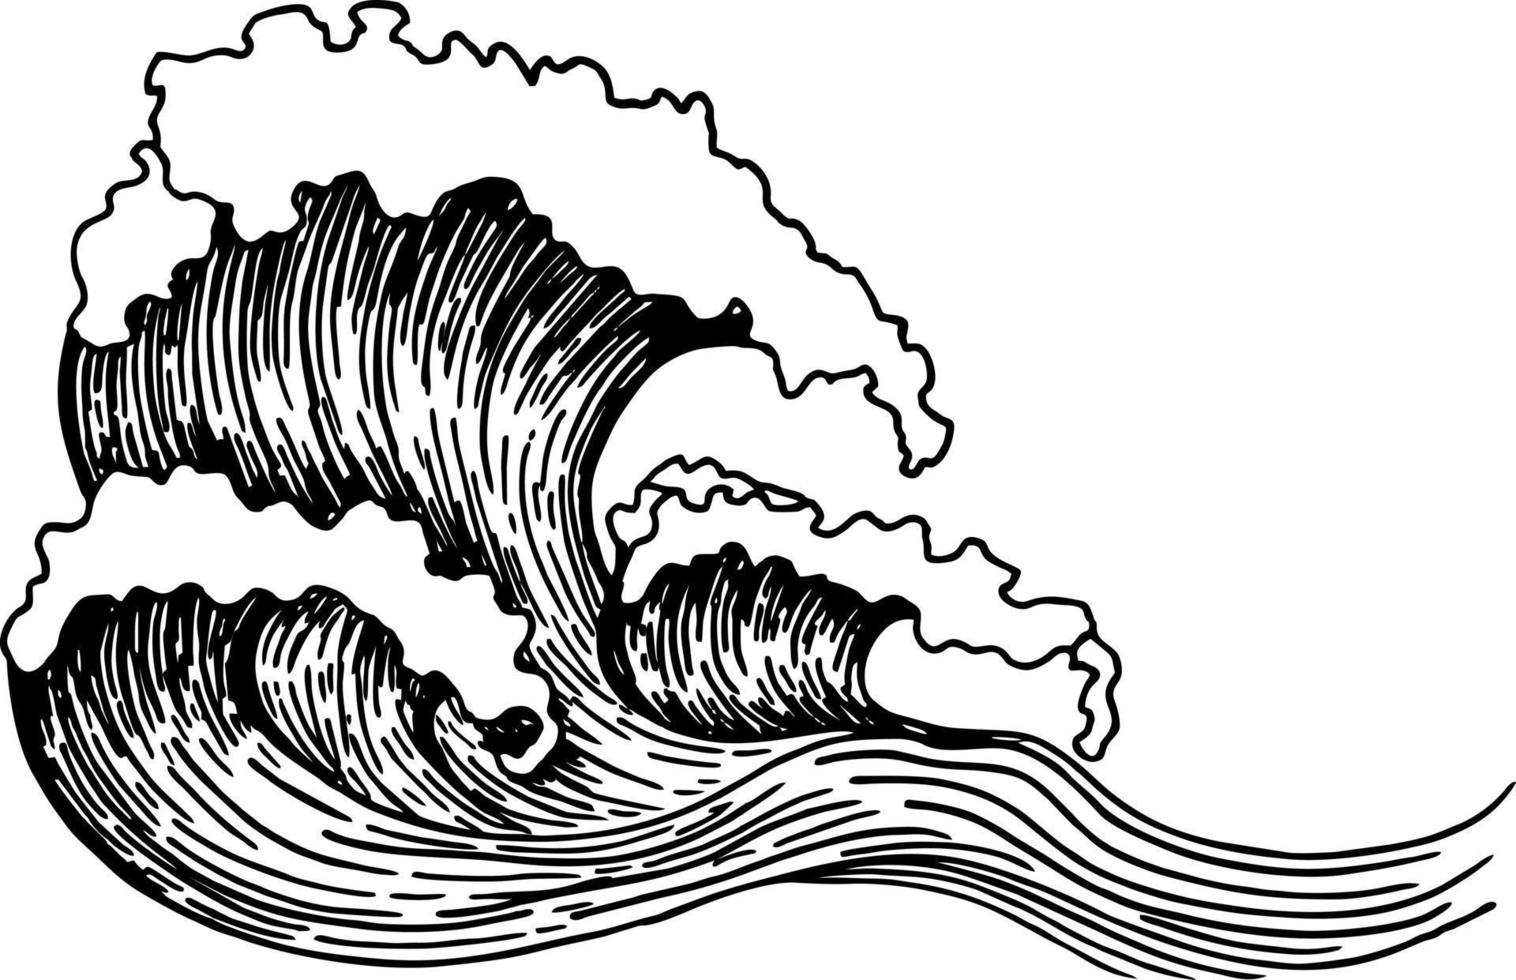 bosquejo de las olas del mar. contorno de la ola del mar. boceto dibujado a mano. conjunto de olas del océano dibujado a mano ilustración de doodle vector